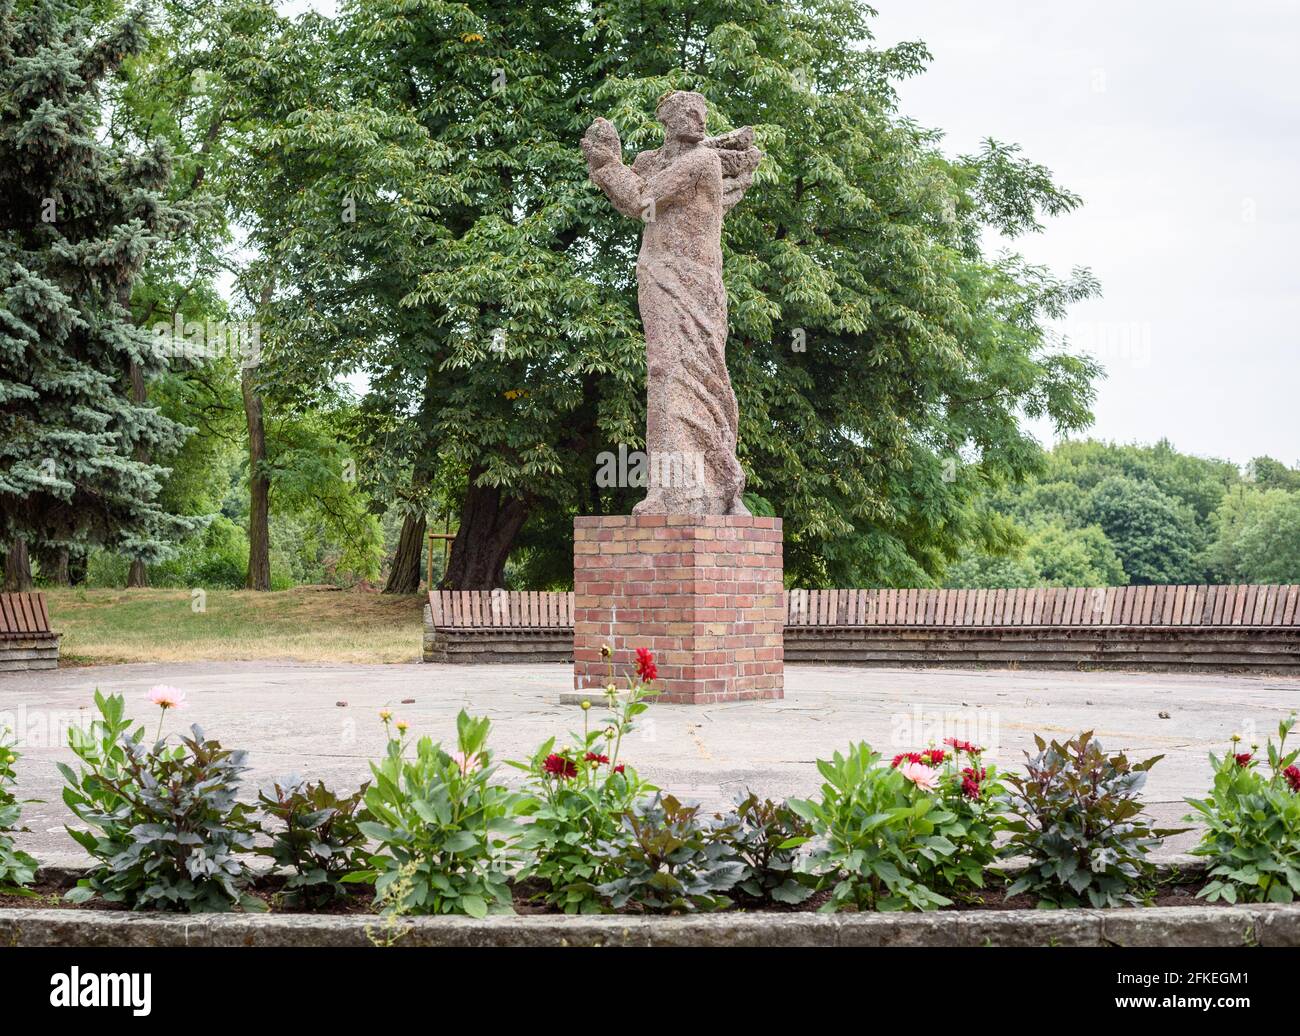 Poznan, wielkopolskie, Poland, 06.07.2019: A sculpture of Nike by Bazyli  Wojtowicz in the Cytadela Park, Poznan, Poland Stock Photo - Alamy